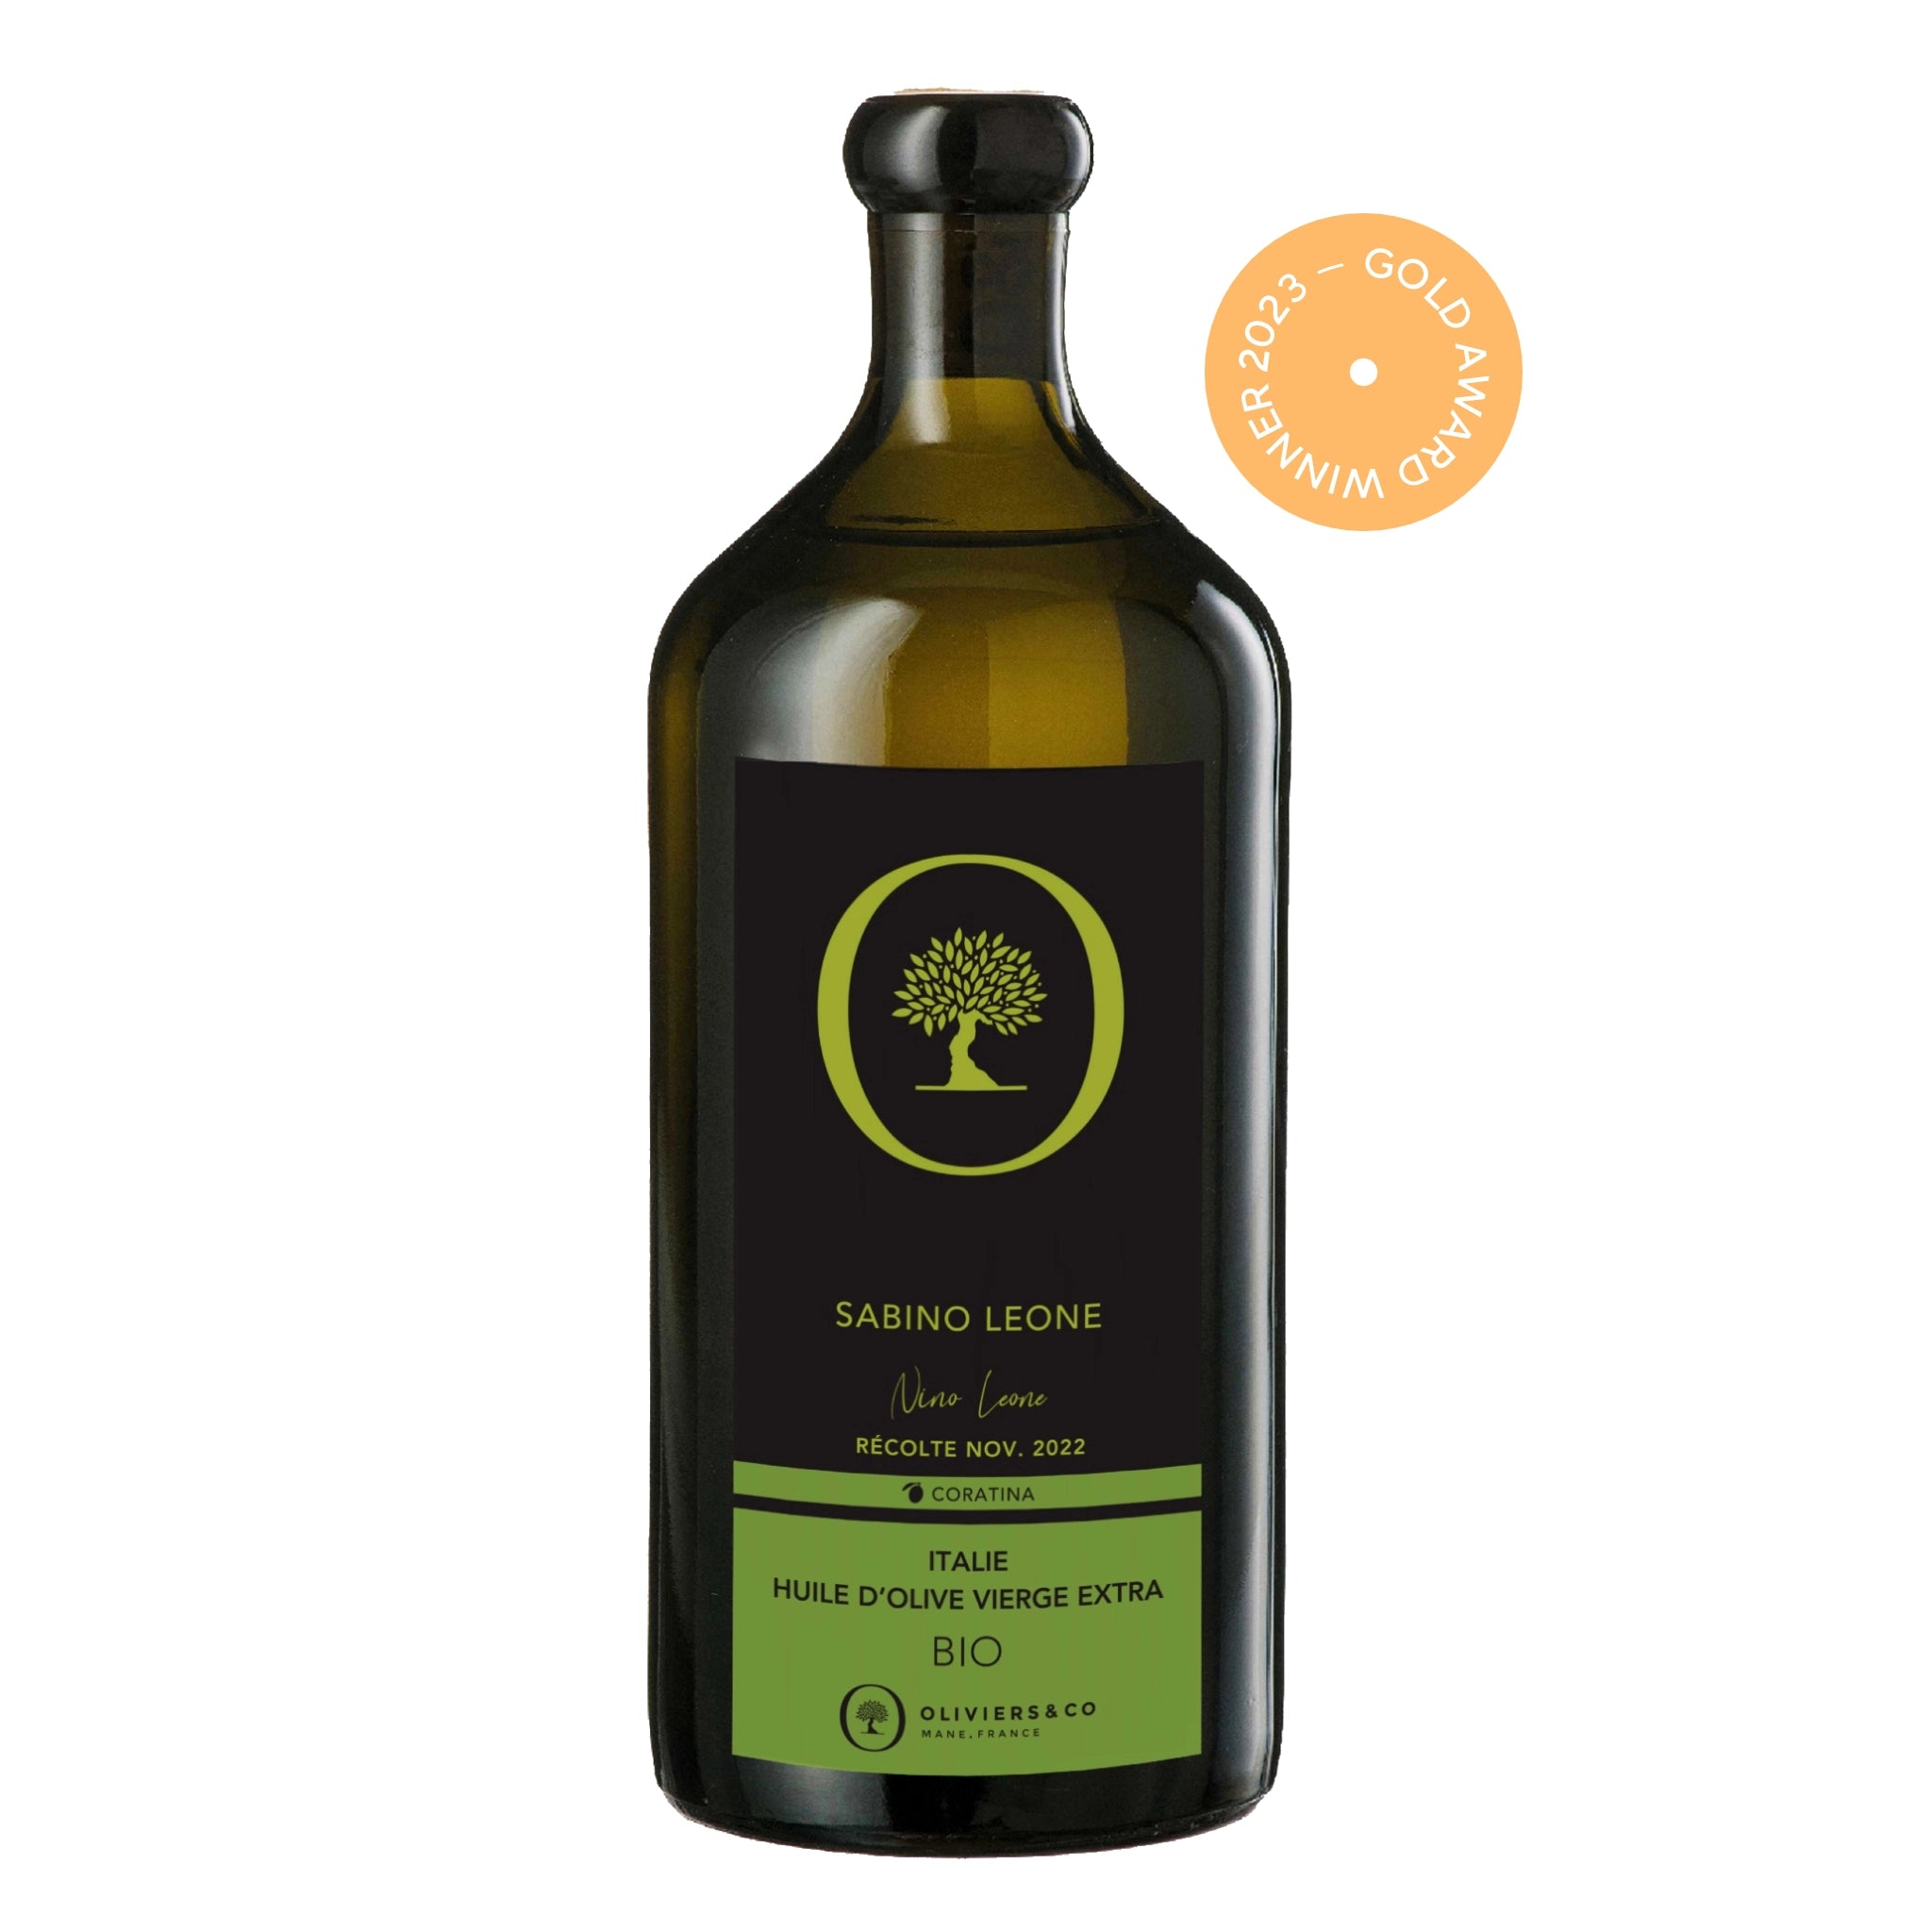 Guldvinder økologisk Sabino Leone ekstra jomfru olivenolie 500 ml fra Oliviers & Co